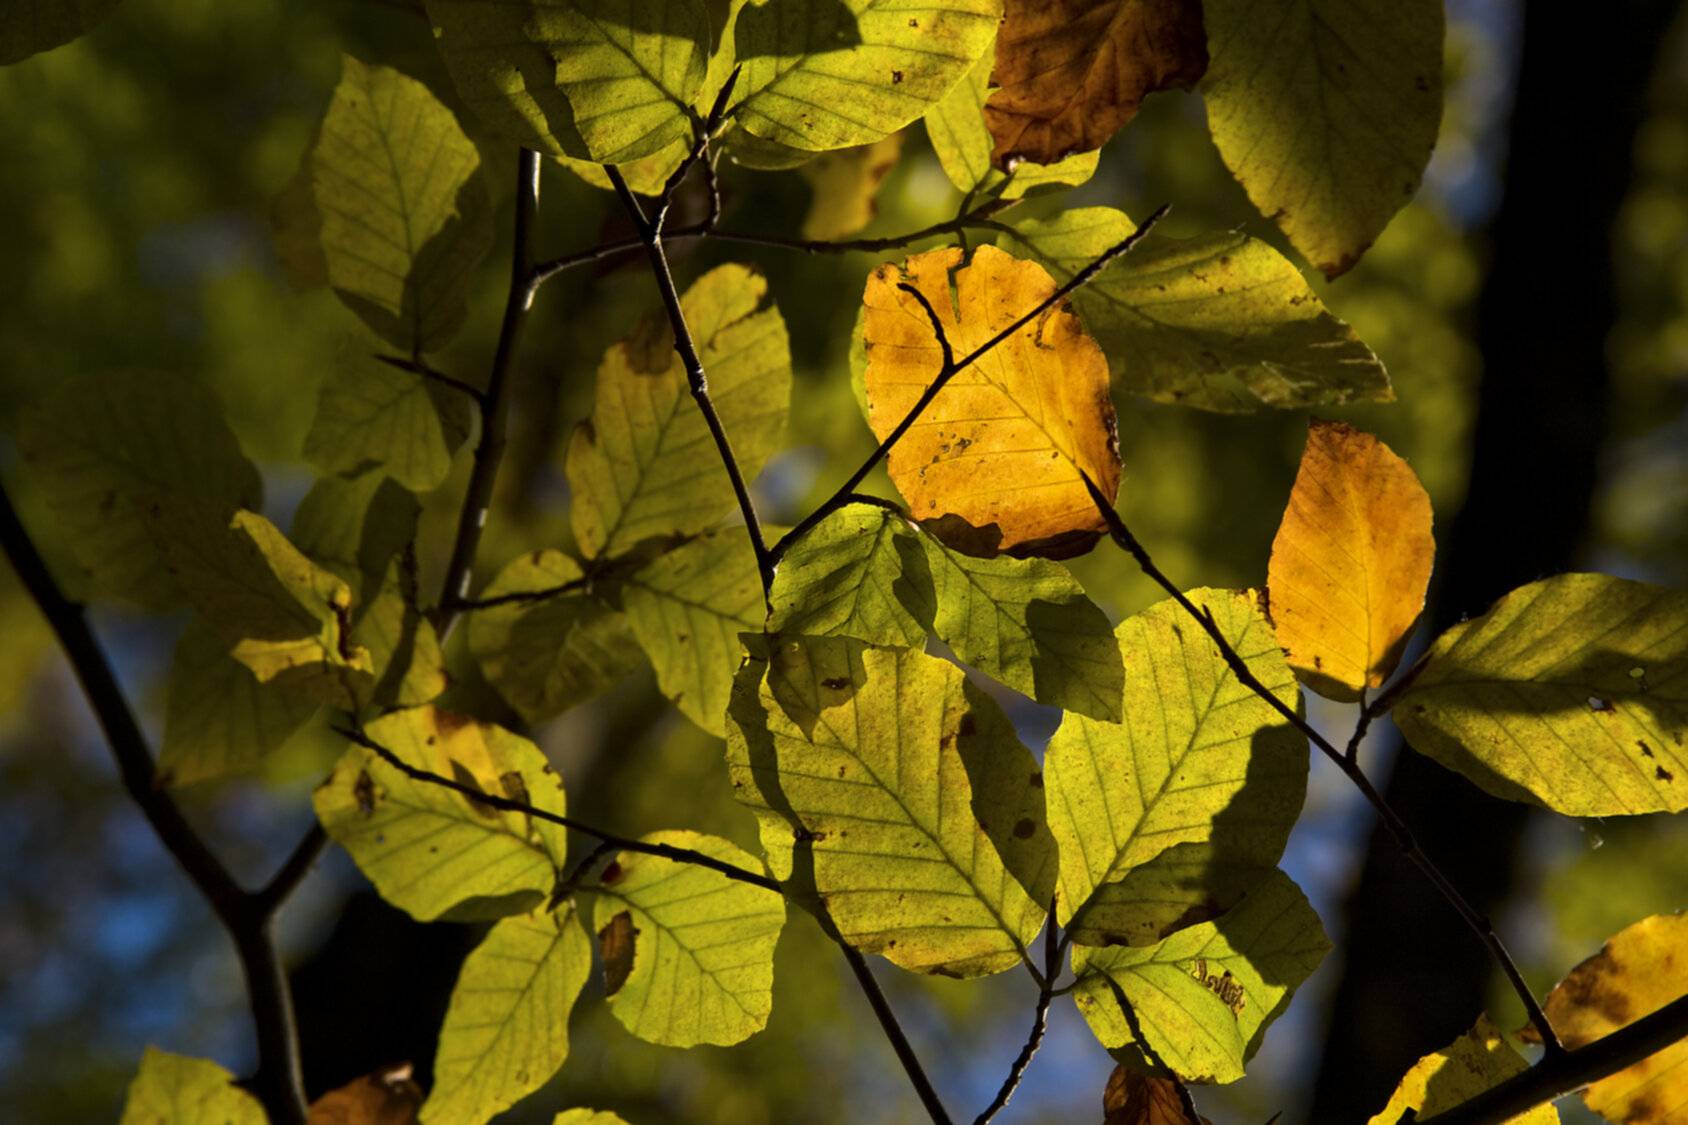 Detalle de hojas en tonos ocres